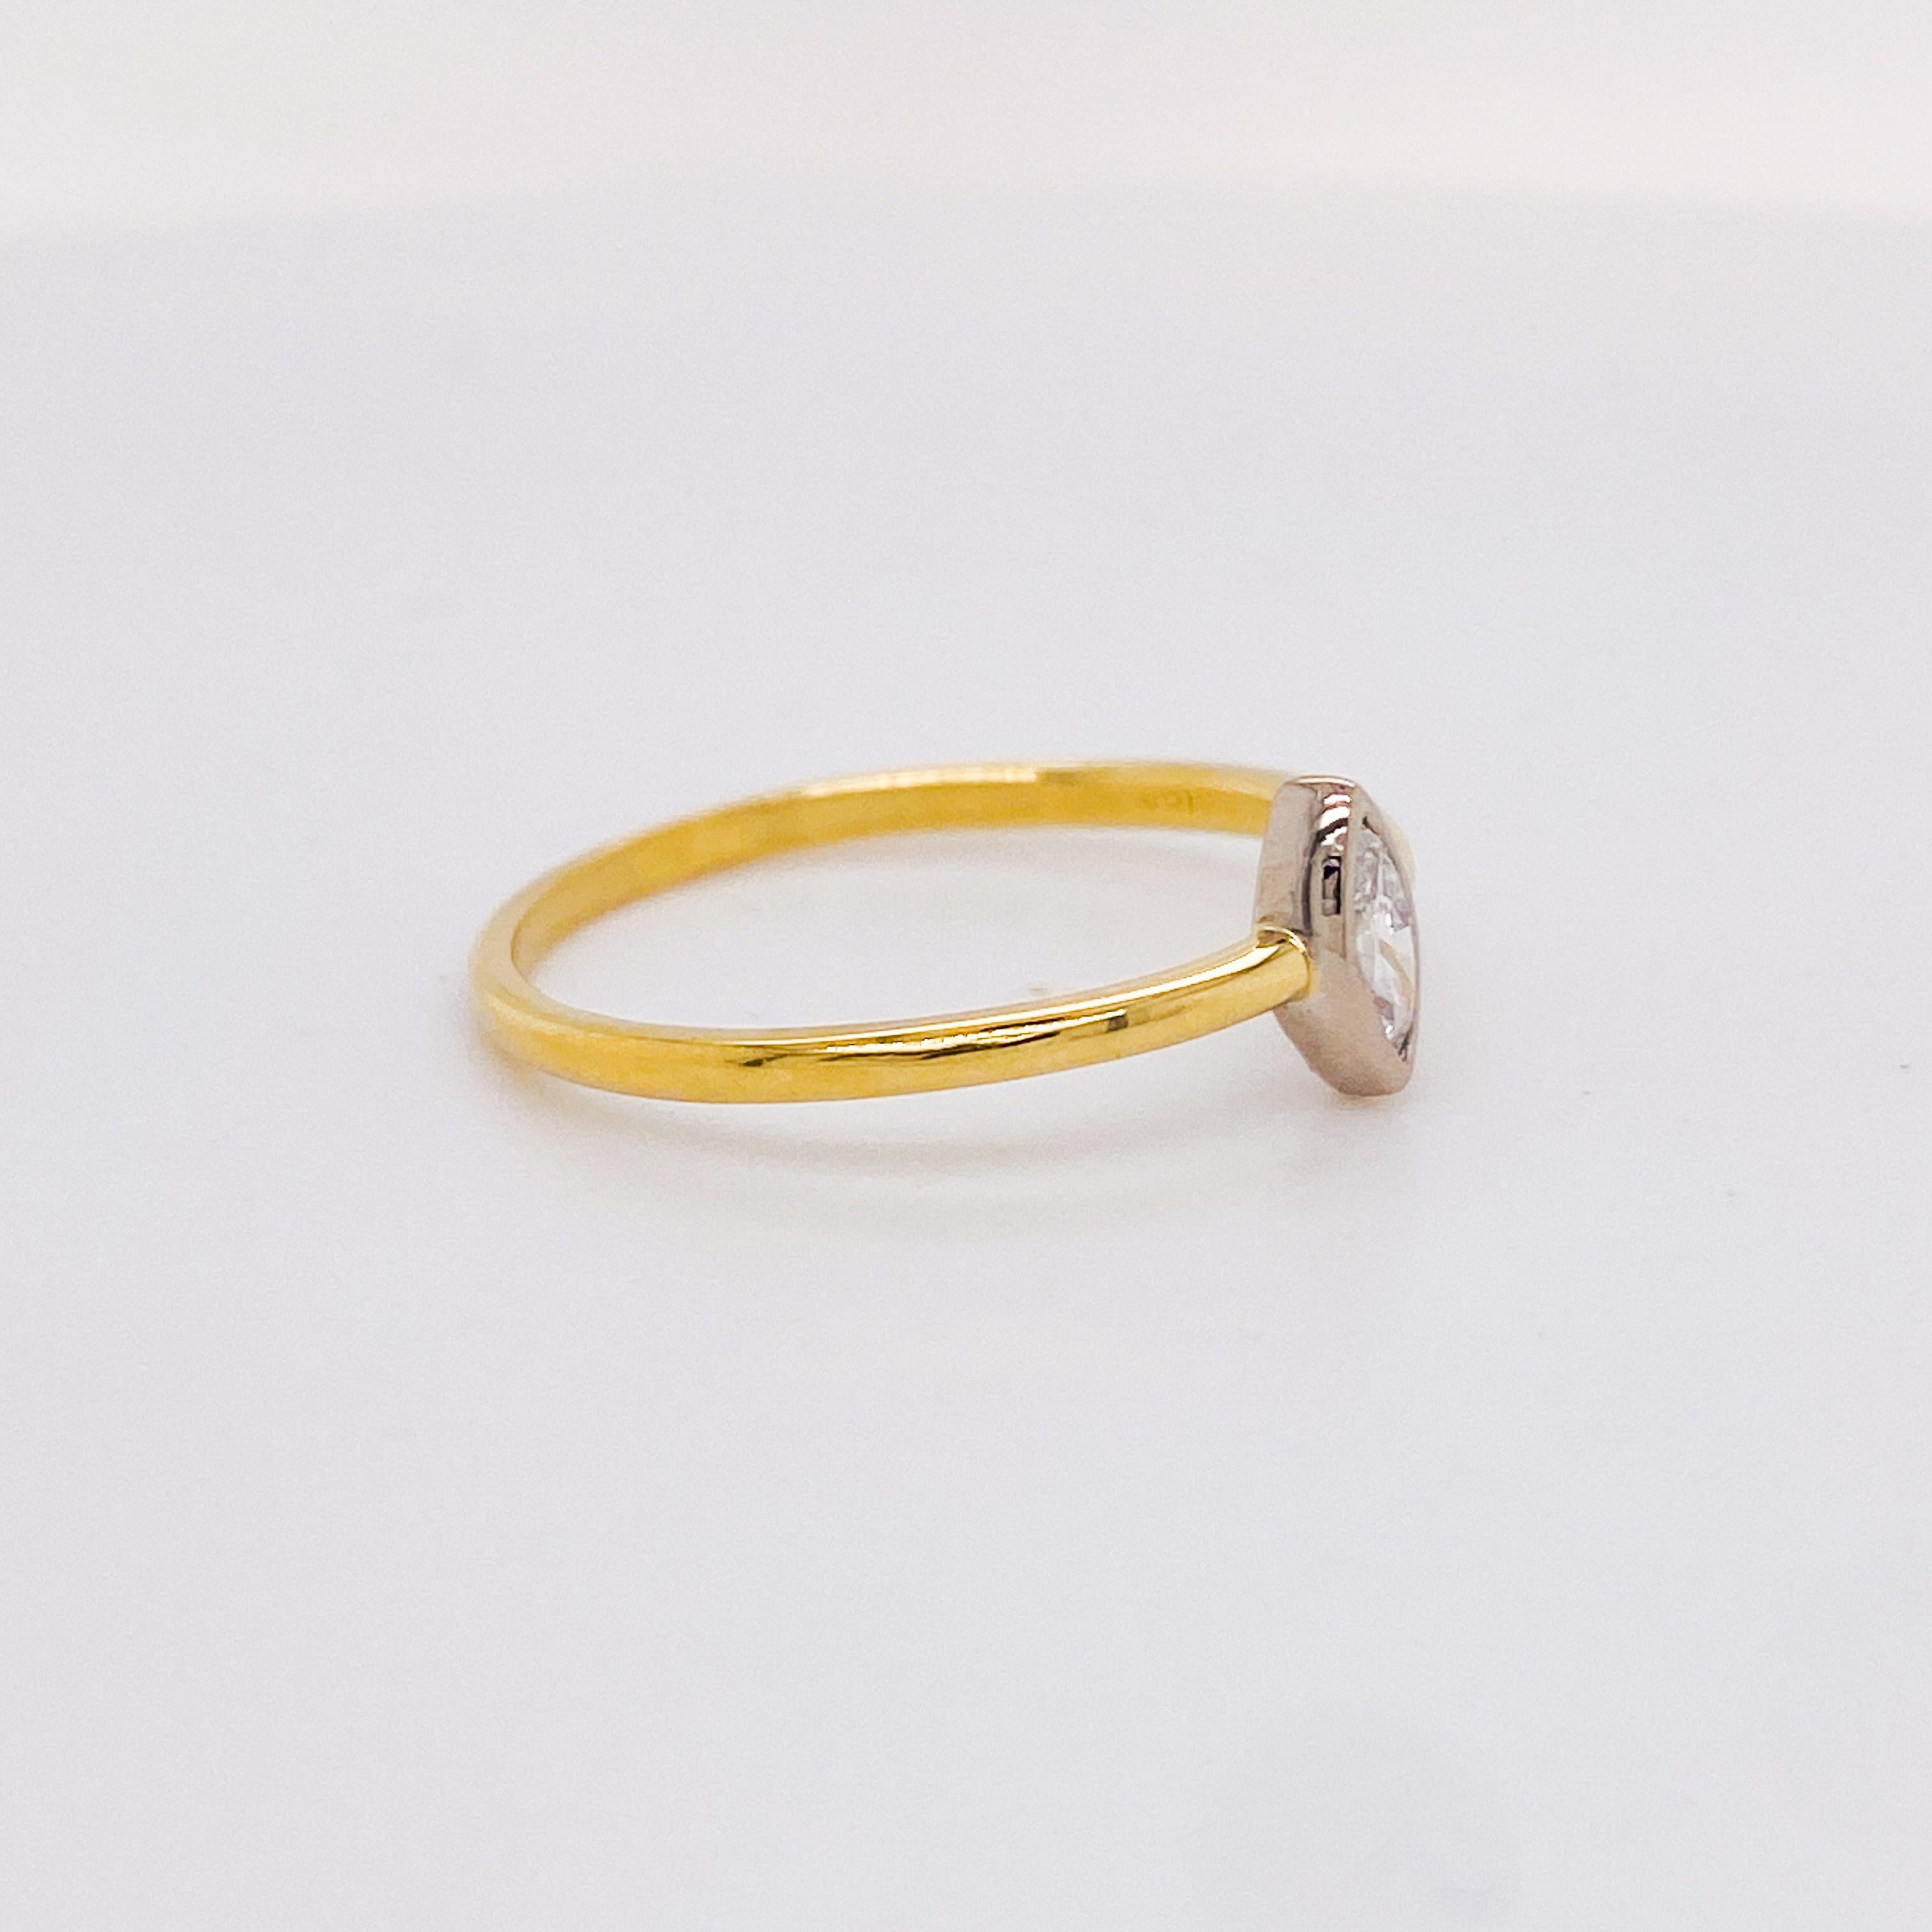 Cette bague minimaliste en diamant marquise renferme un diamant marquise de 0,25 carat dans un chaton en or blanc 18 carats. Le diamant marquise est de pureté SI et de couleur G (presque incolore). Le bracelet en or jaune 18 carats est composé de